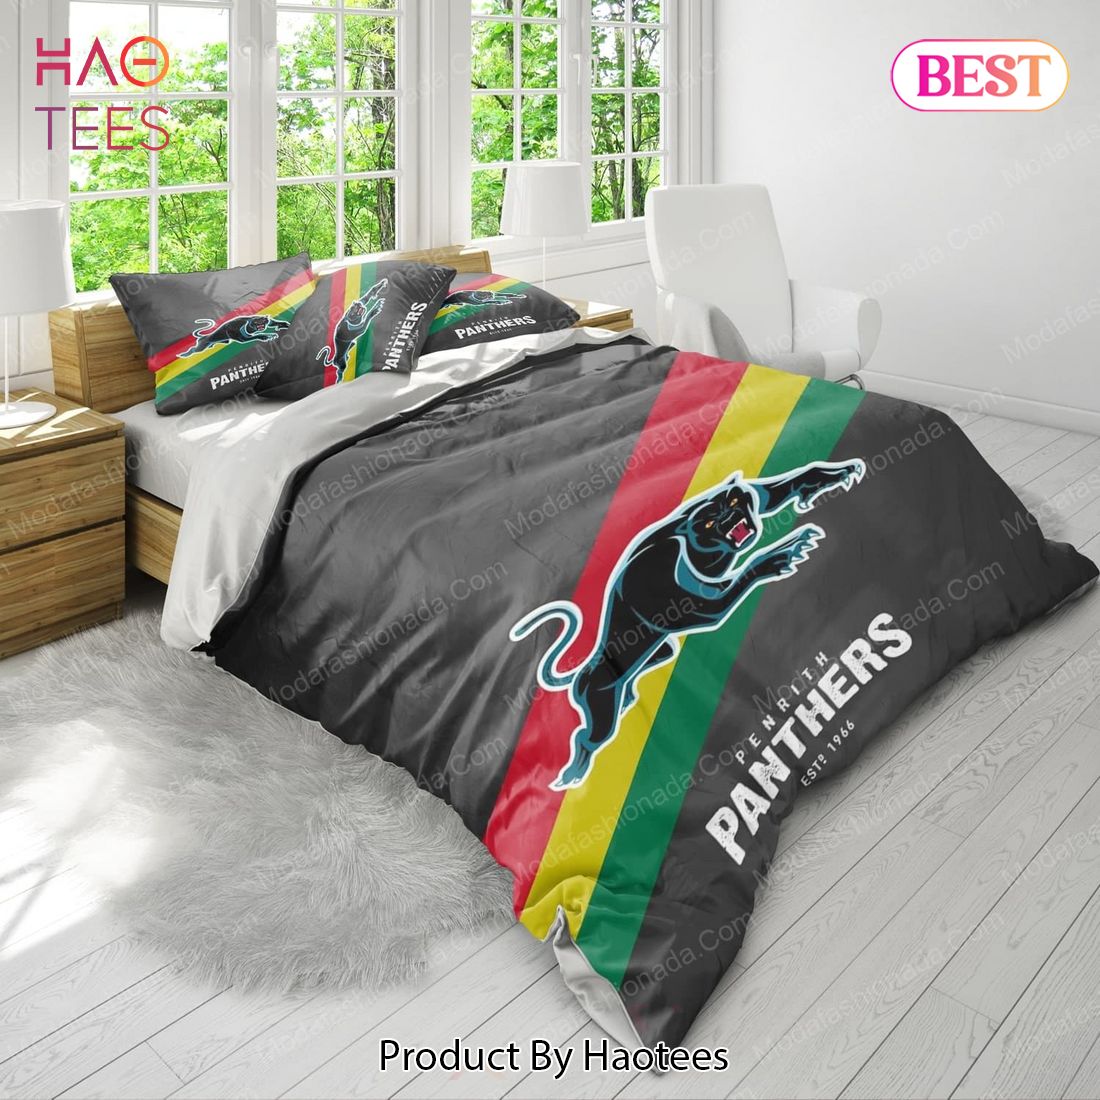 Penrith Panthers Logo Bedding Sets Bed Sets, Bedroom Sets, Comforter Sets, Duvet Cover, Bedspread